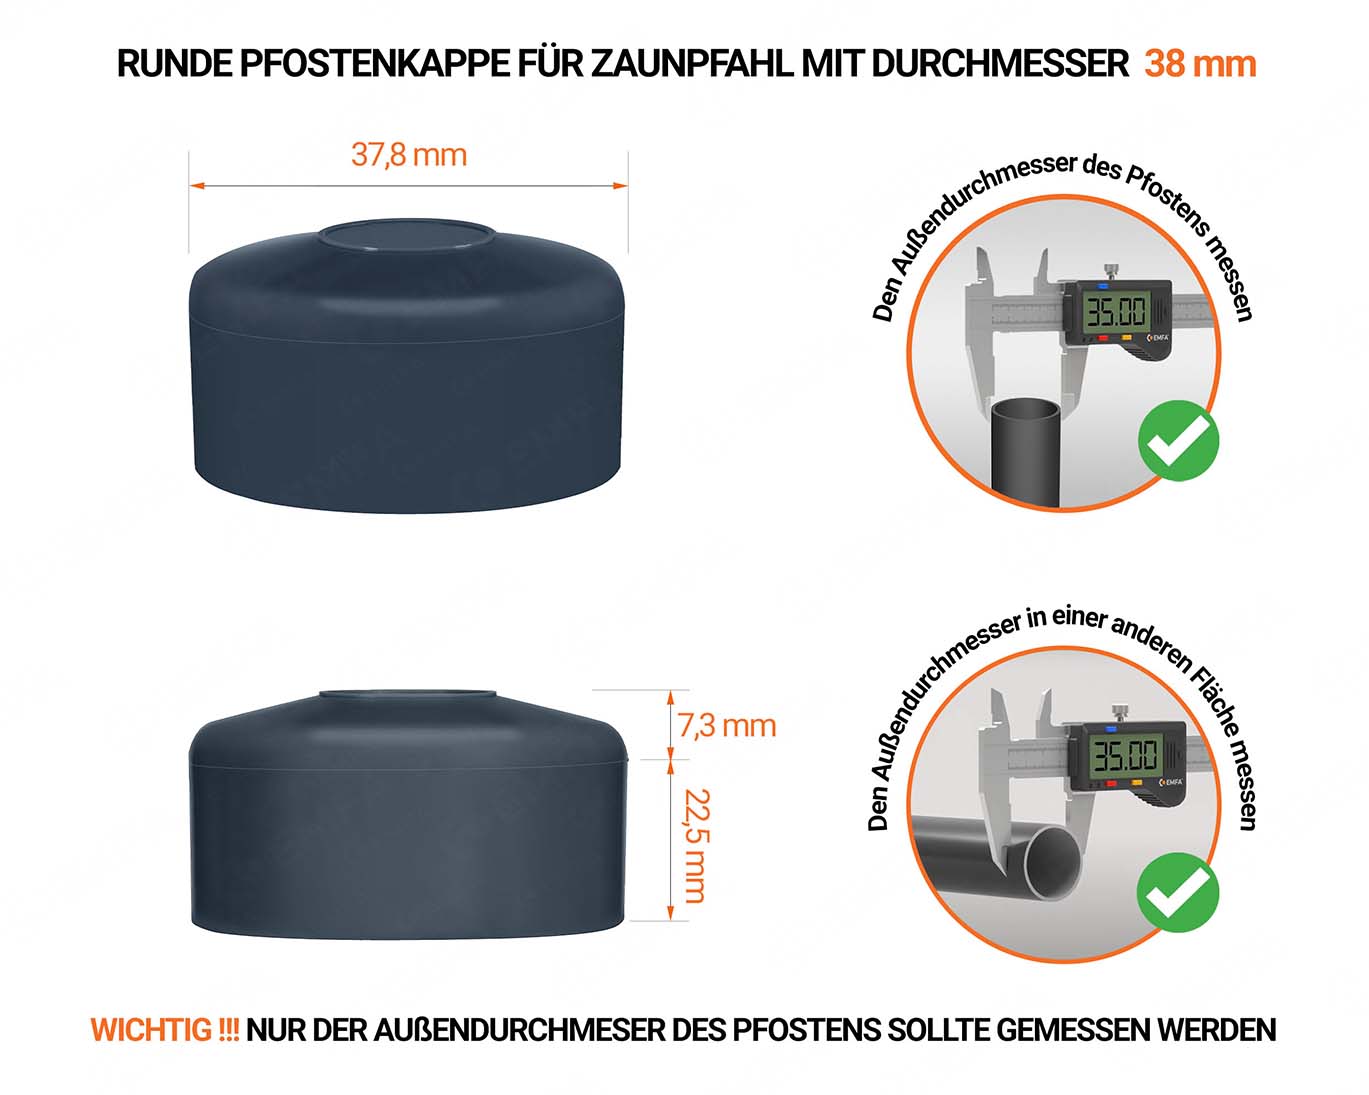 Anthrazite Pfostenkappen rund für Pfostendurchmesser  38 mm mit technischen Abmessungen und Anleitung für korrekte Messung